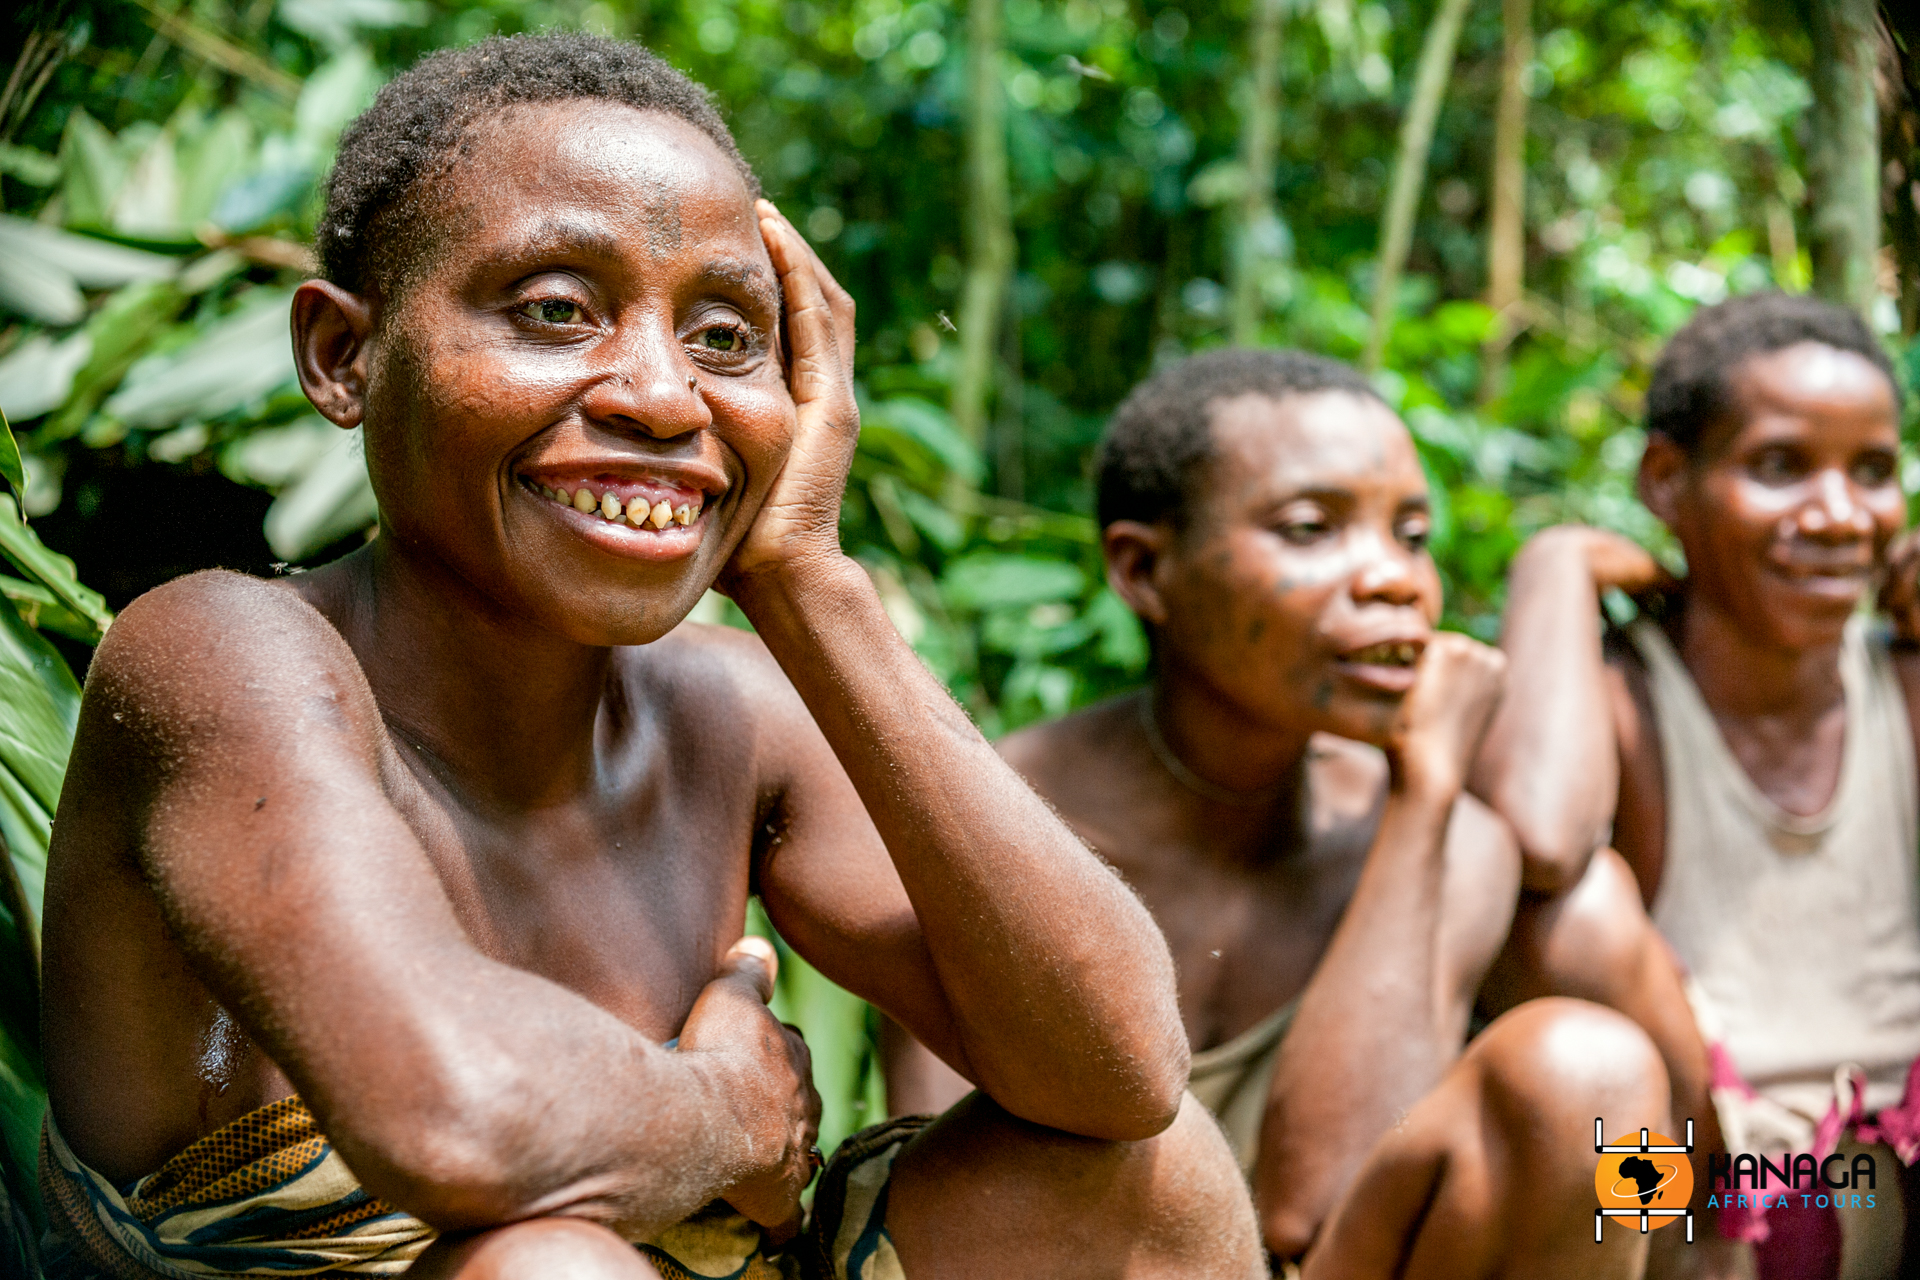 Pygmies around Bayanga - Kanaga Africa Tours